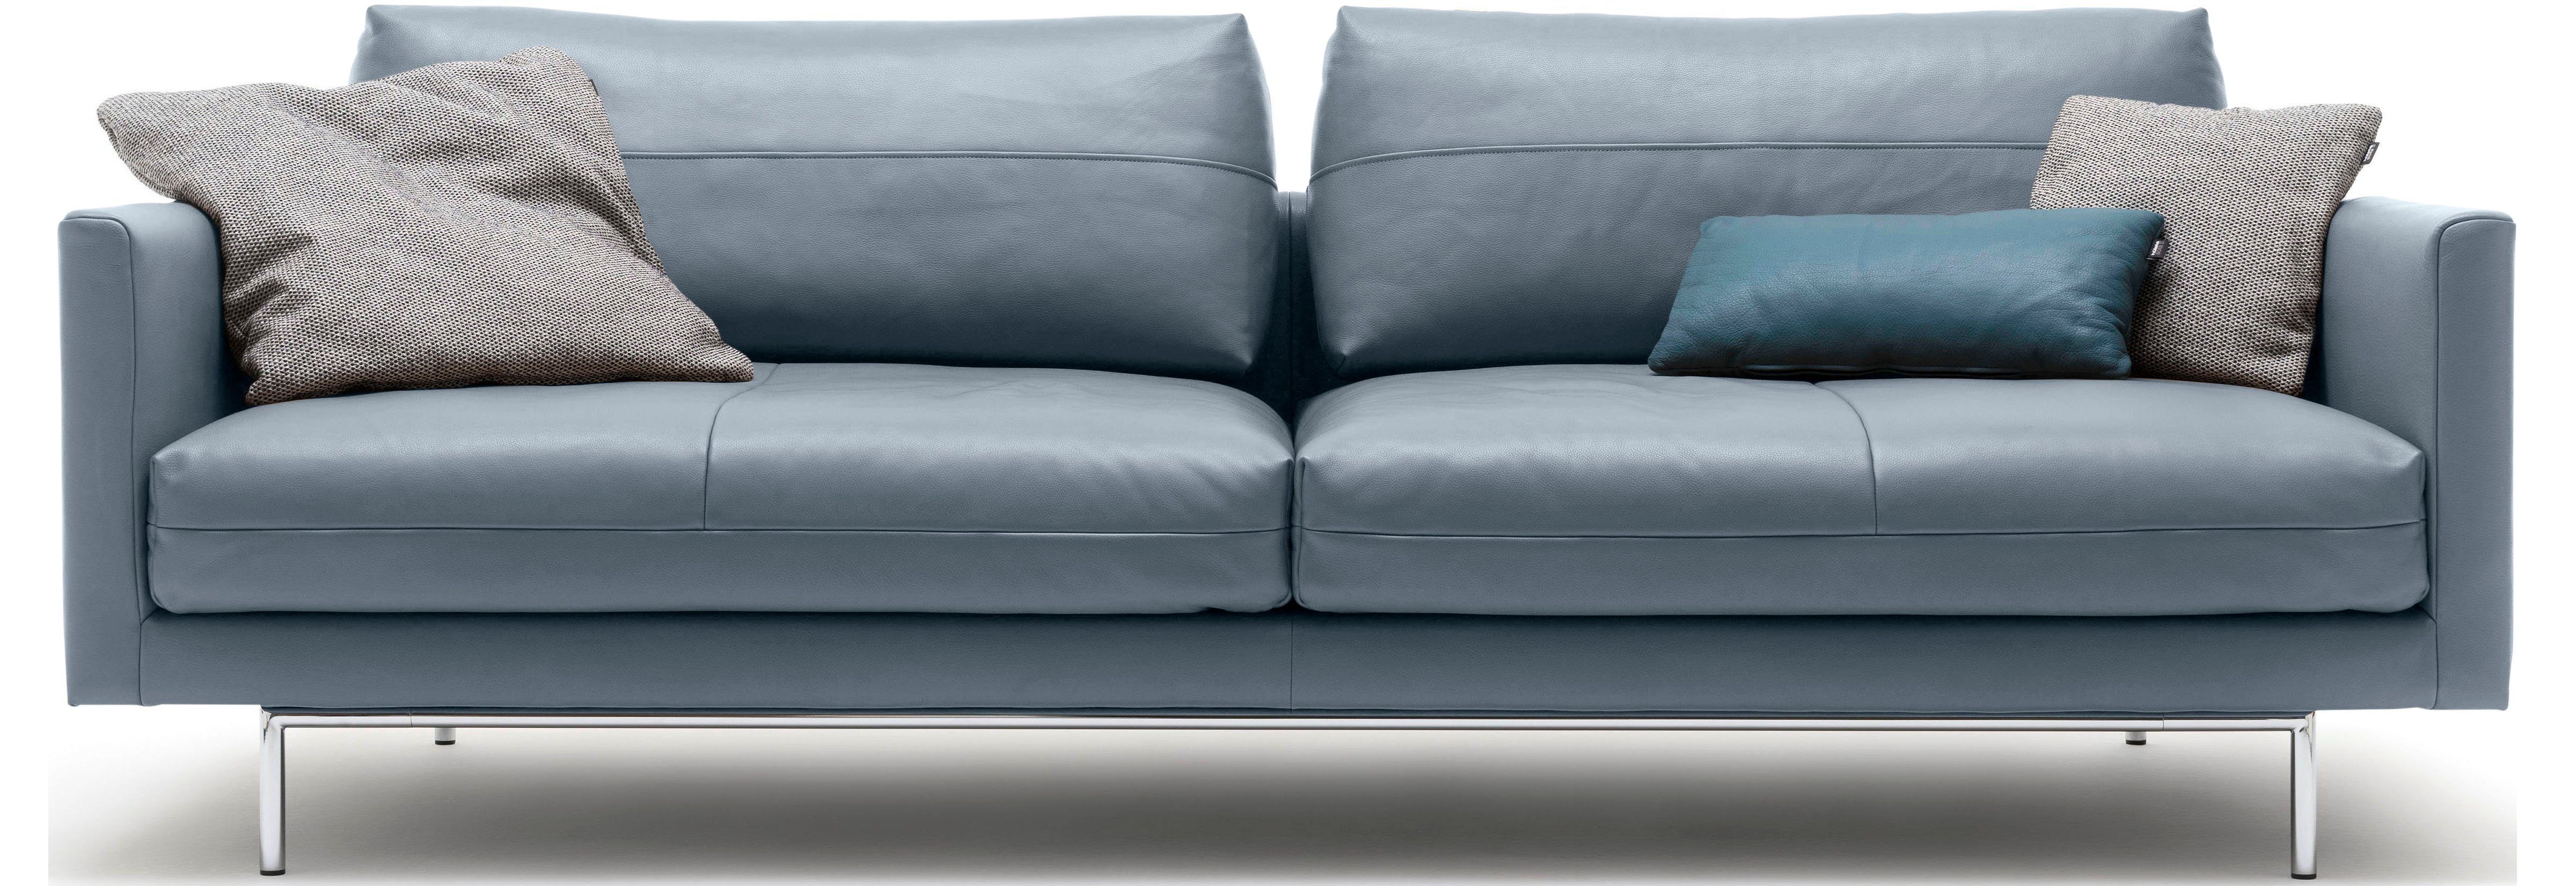 | hülsta blaugrau 4-Sitzer blaugrau sofa